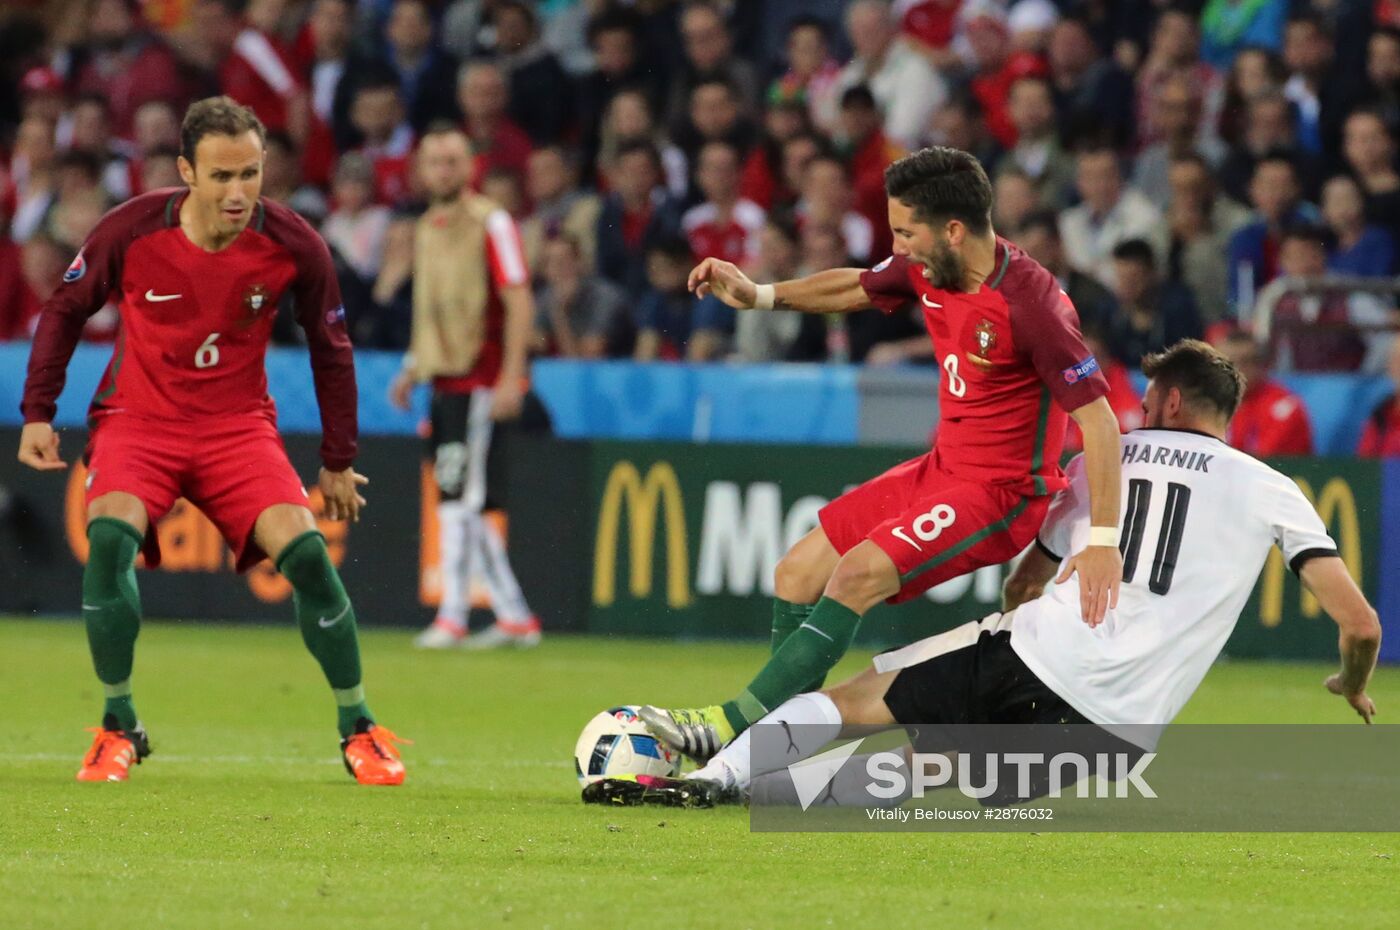 UEFA Euro 2016. Portugal vs. Austria